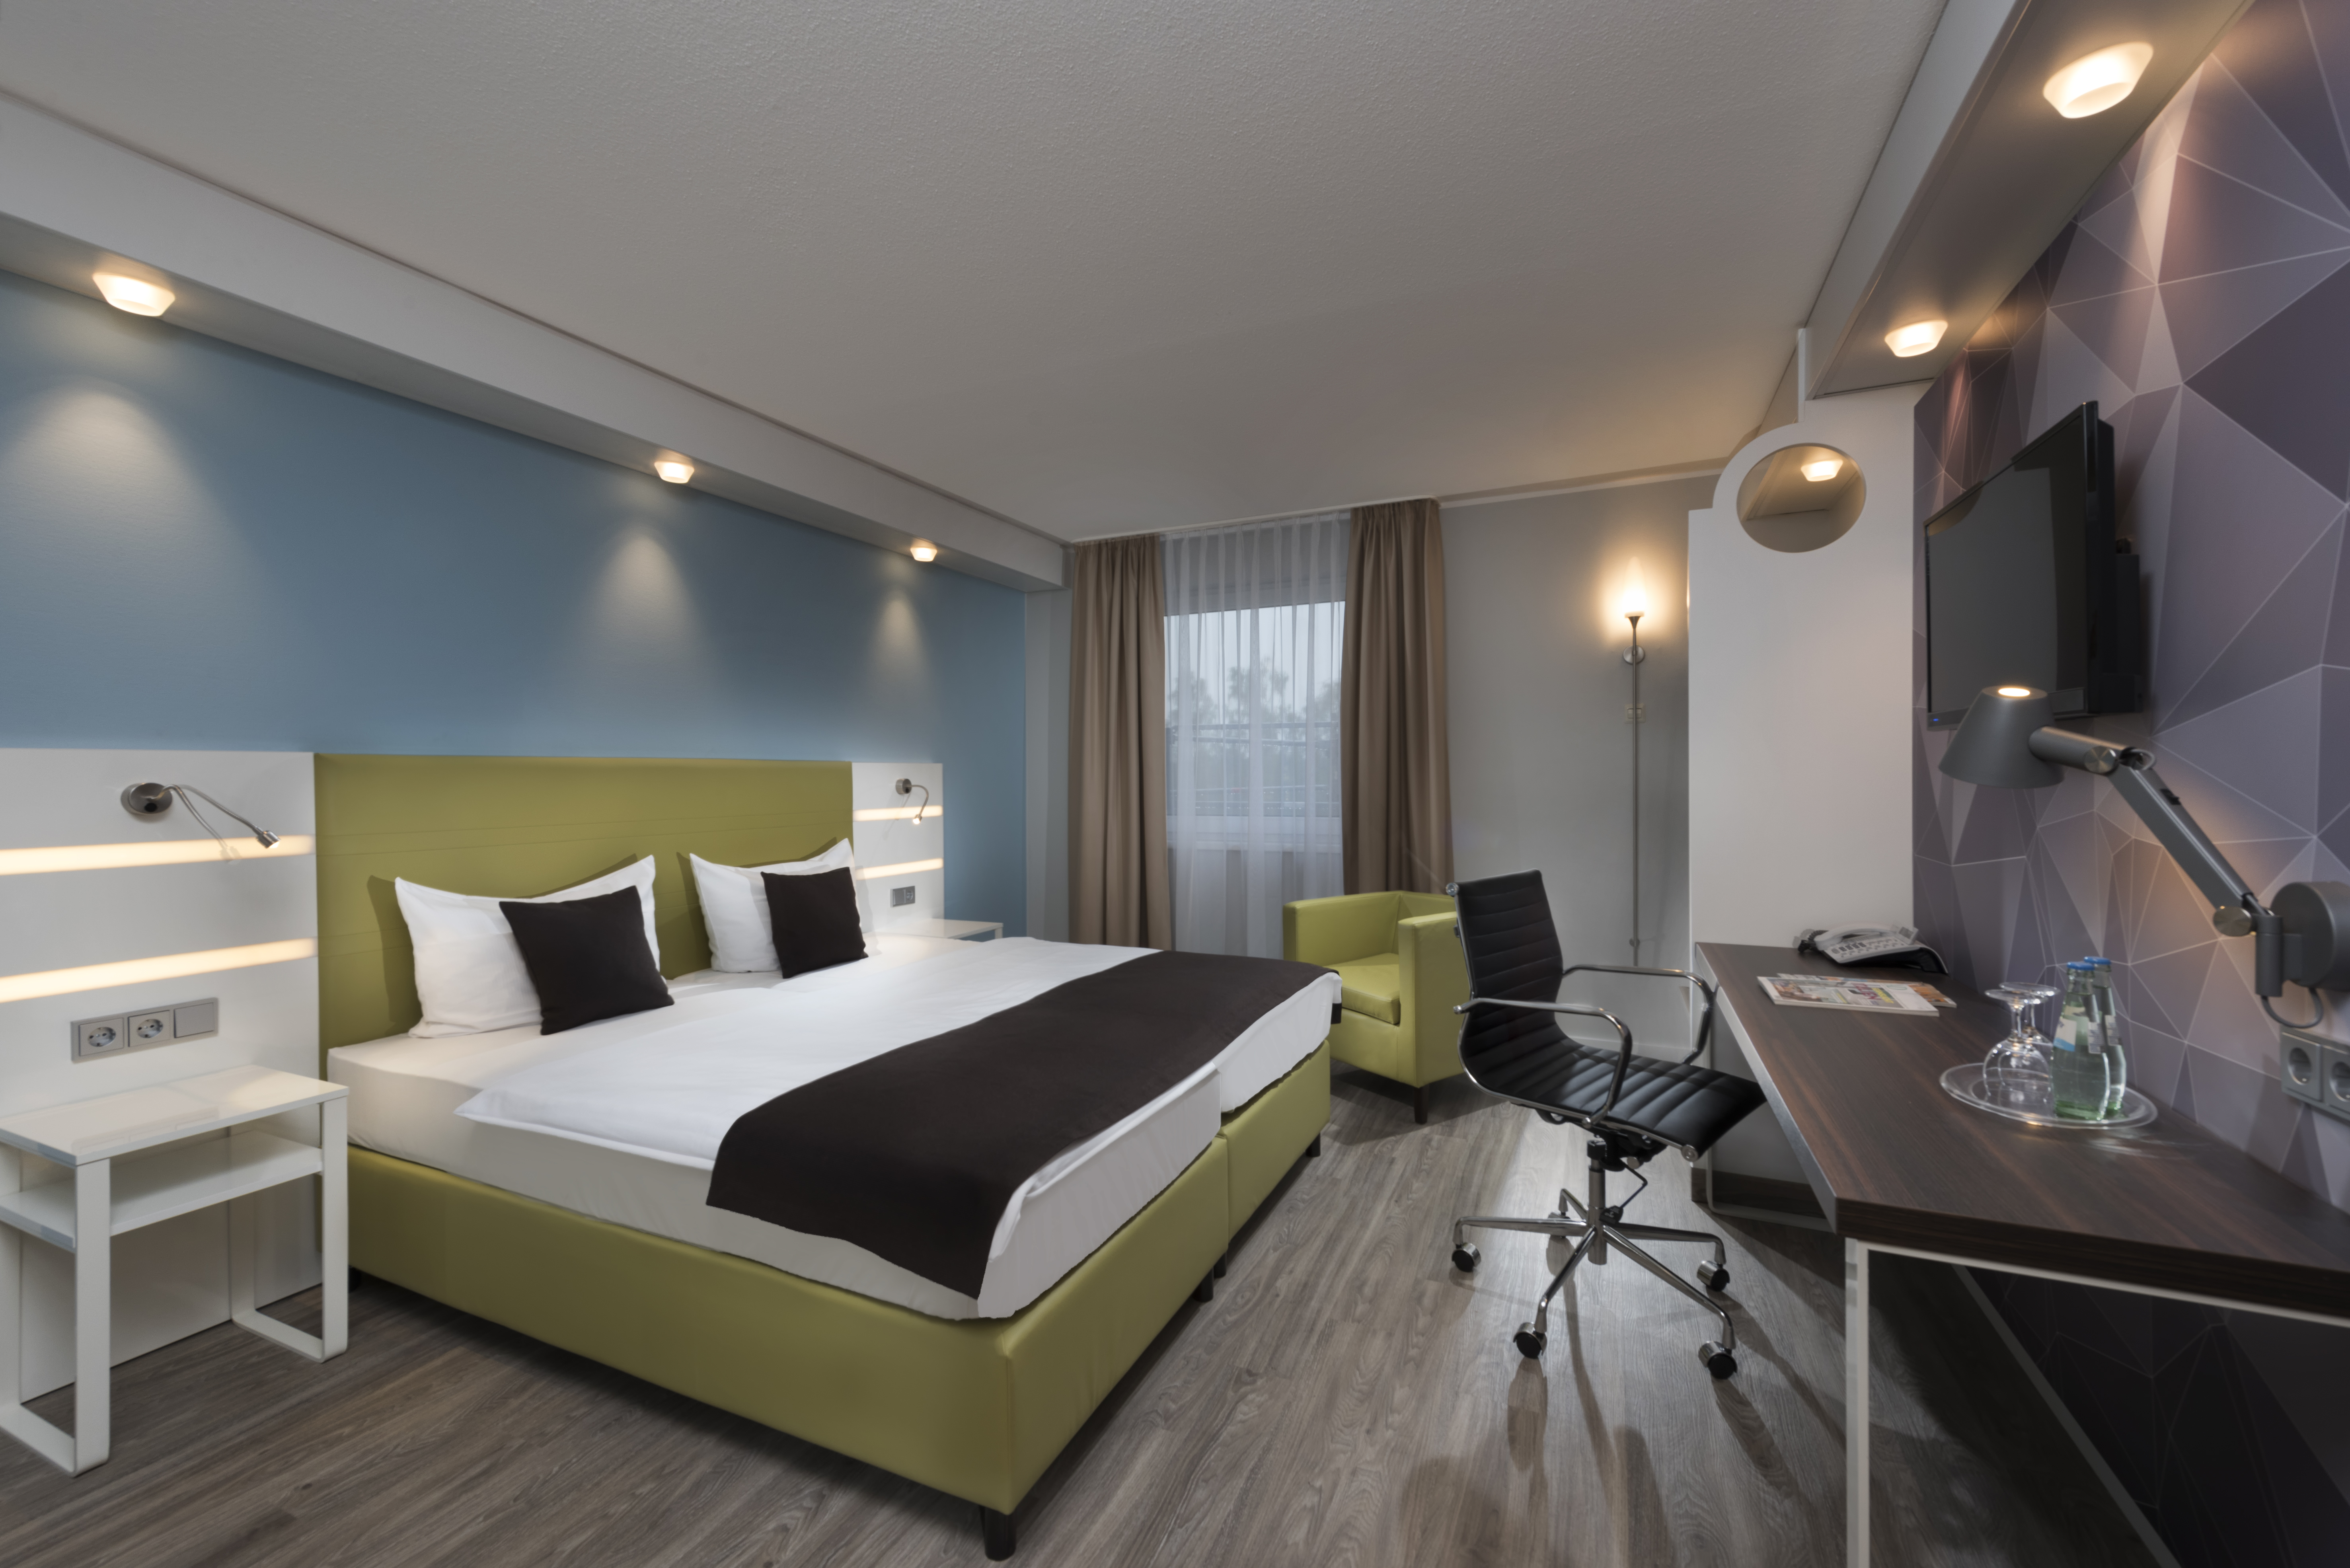 3 Hotel Rooms In Peine Best Western Hotel Peine Salzgitter